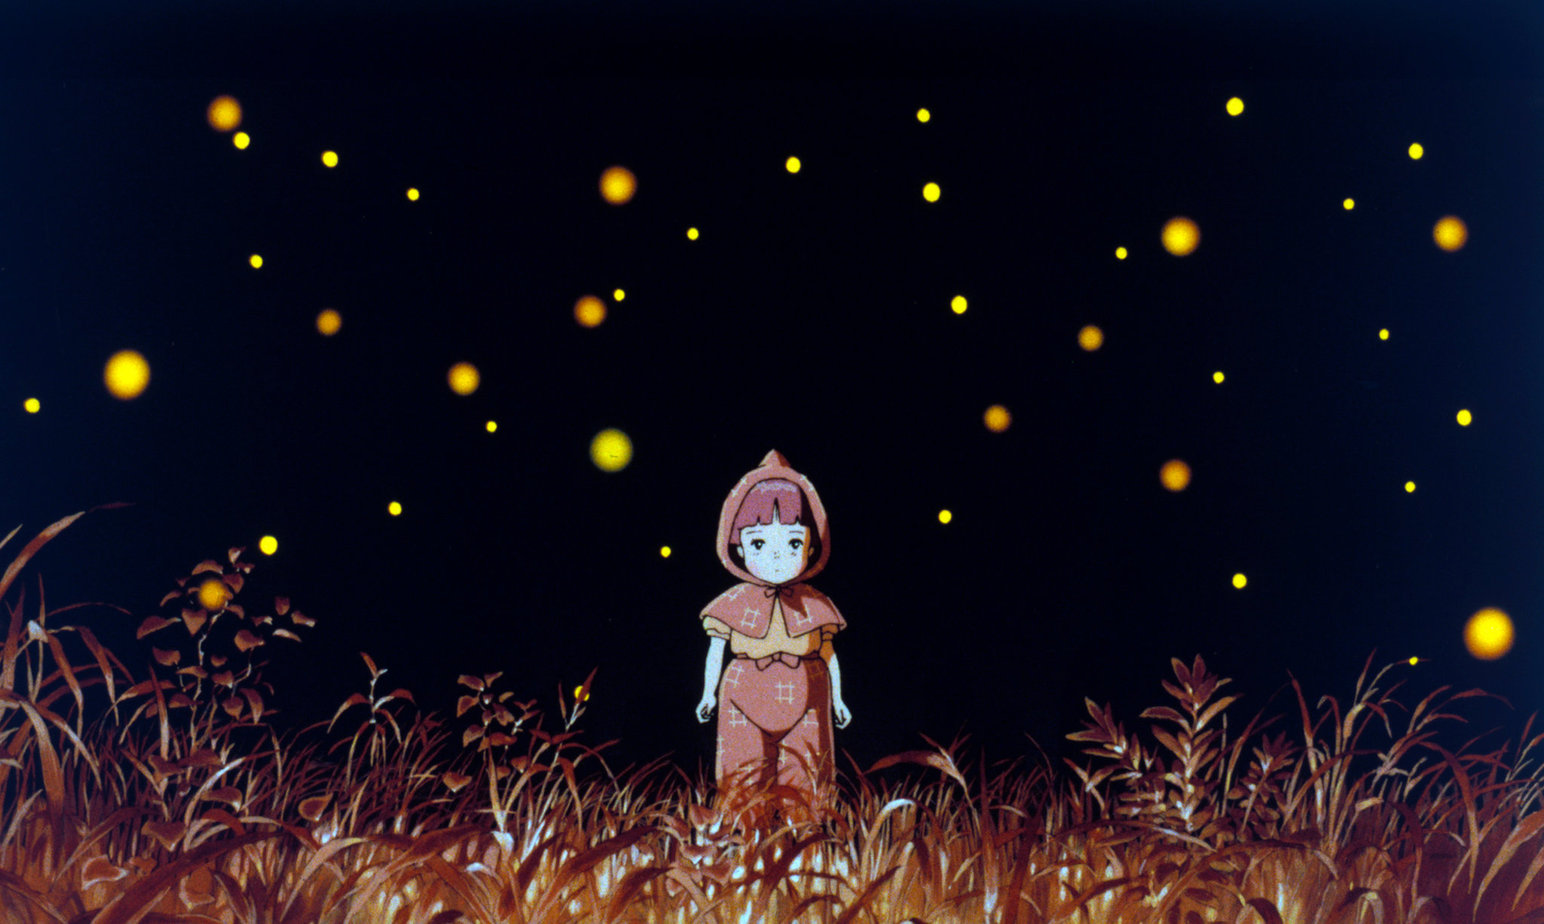 Liste des meilleurs films d'animation des années 80 - Grave of the Fireflies